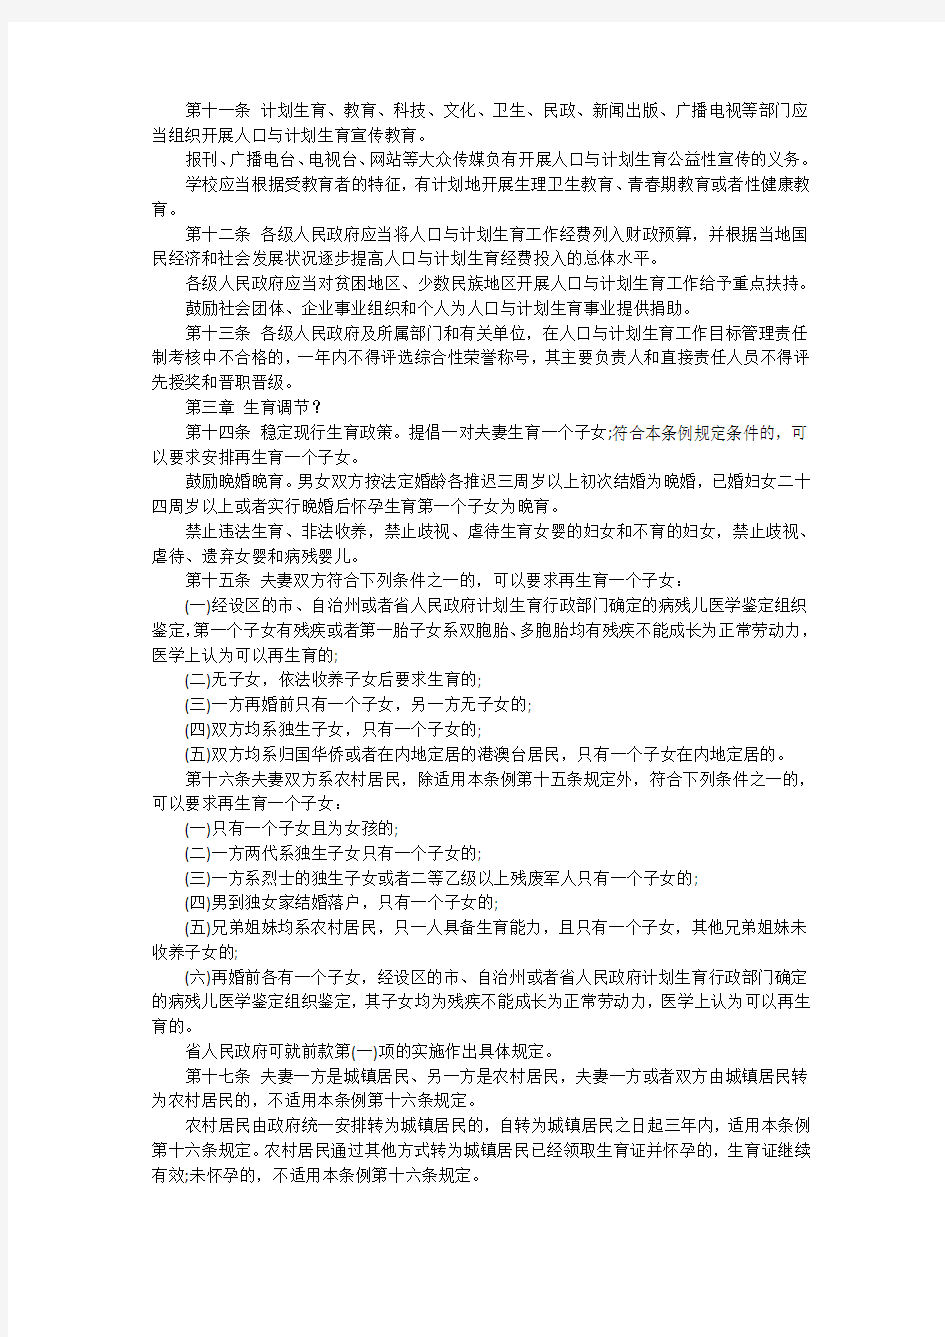 2019年湖南省人口与计划生育条例